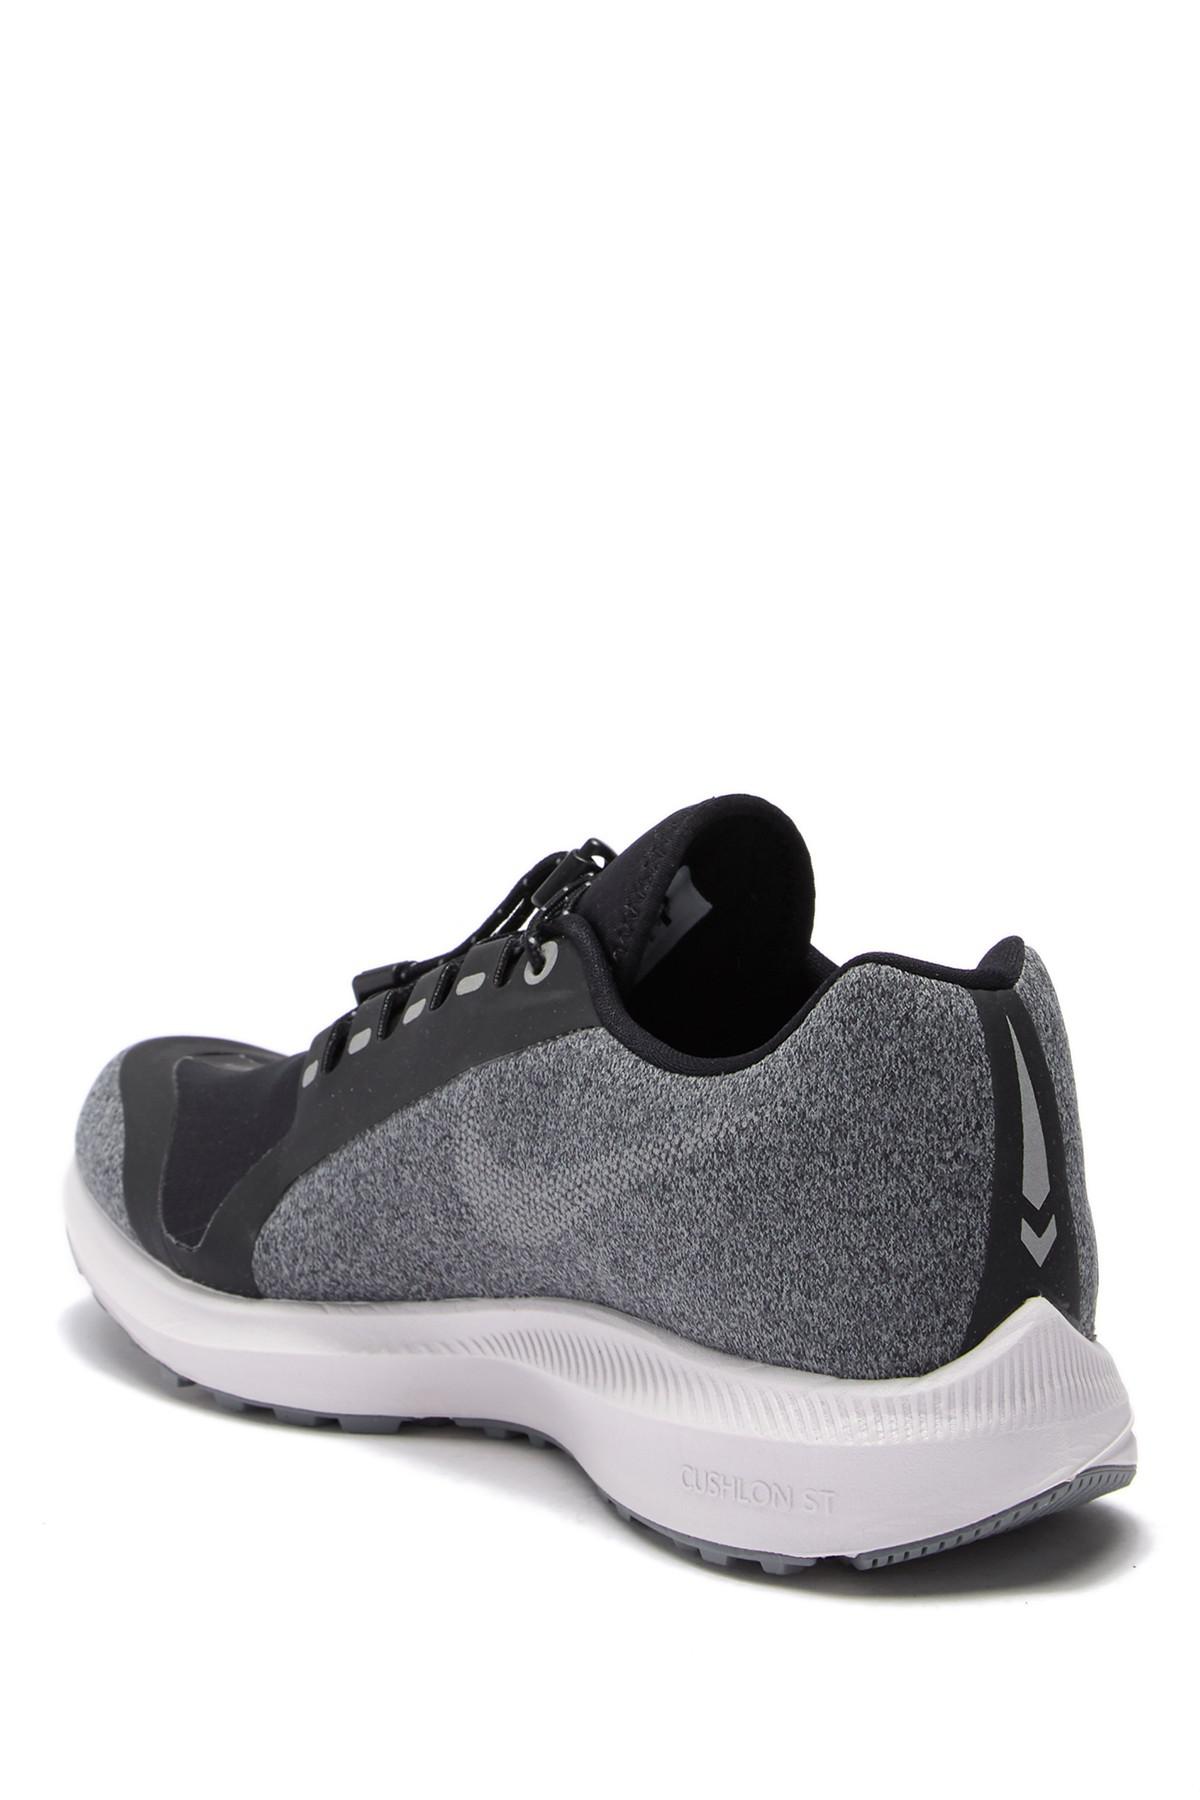 Nike Zoom Winflo 5 Shield Athletic Shoe in Black | Lyst